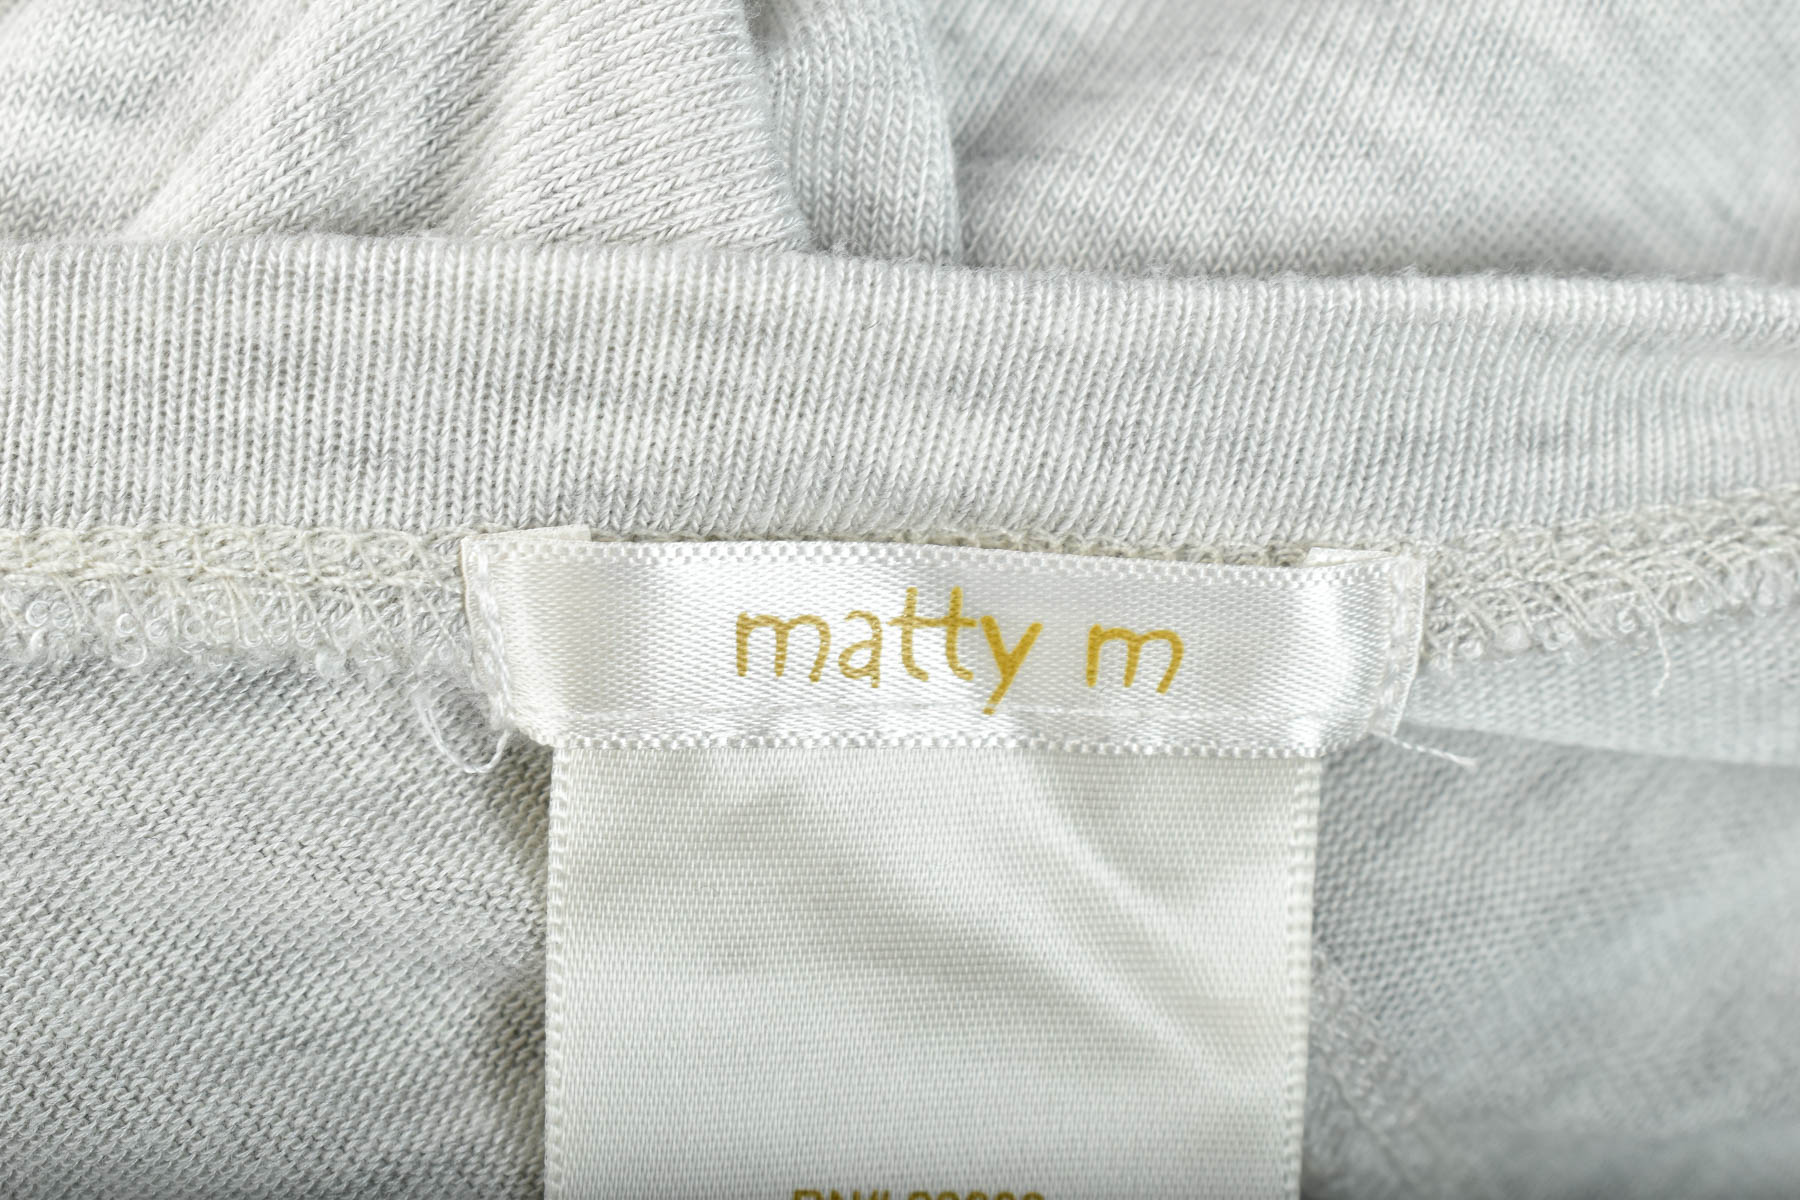 Γυναικείο πουλόβερ - Matty m - 2